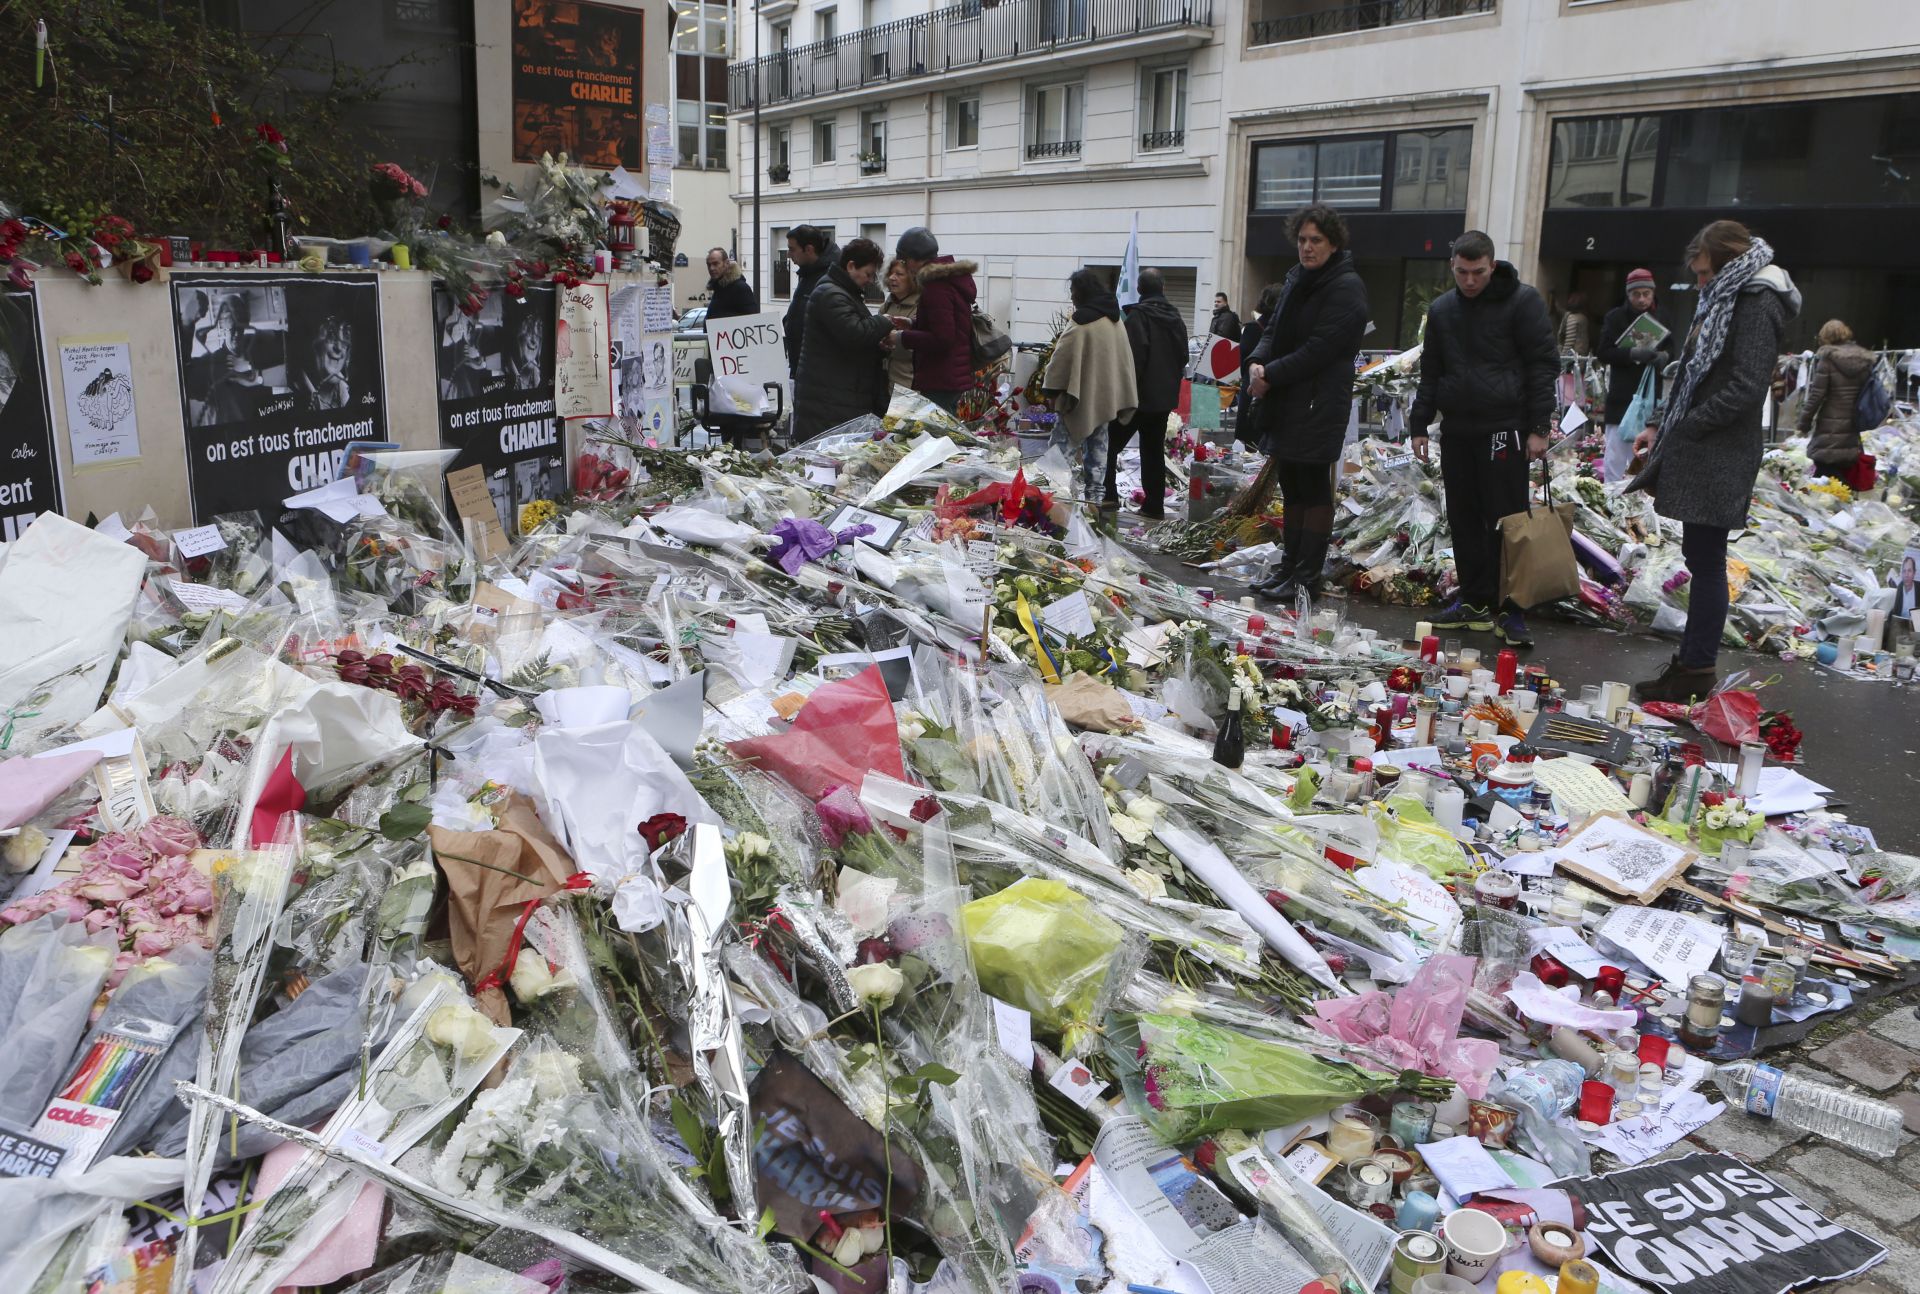 Януари 2015 г.: След атентата в редакцията на "Шарли Ебдо" Януари 2015 г.: След атентата в редакцията на "Шарли Ебдо"